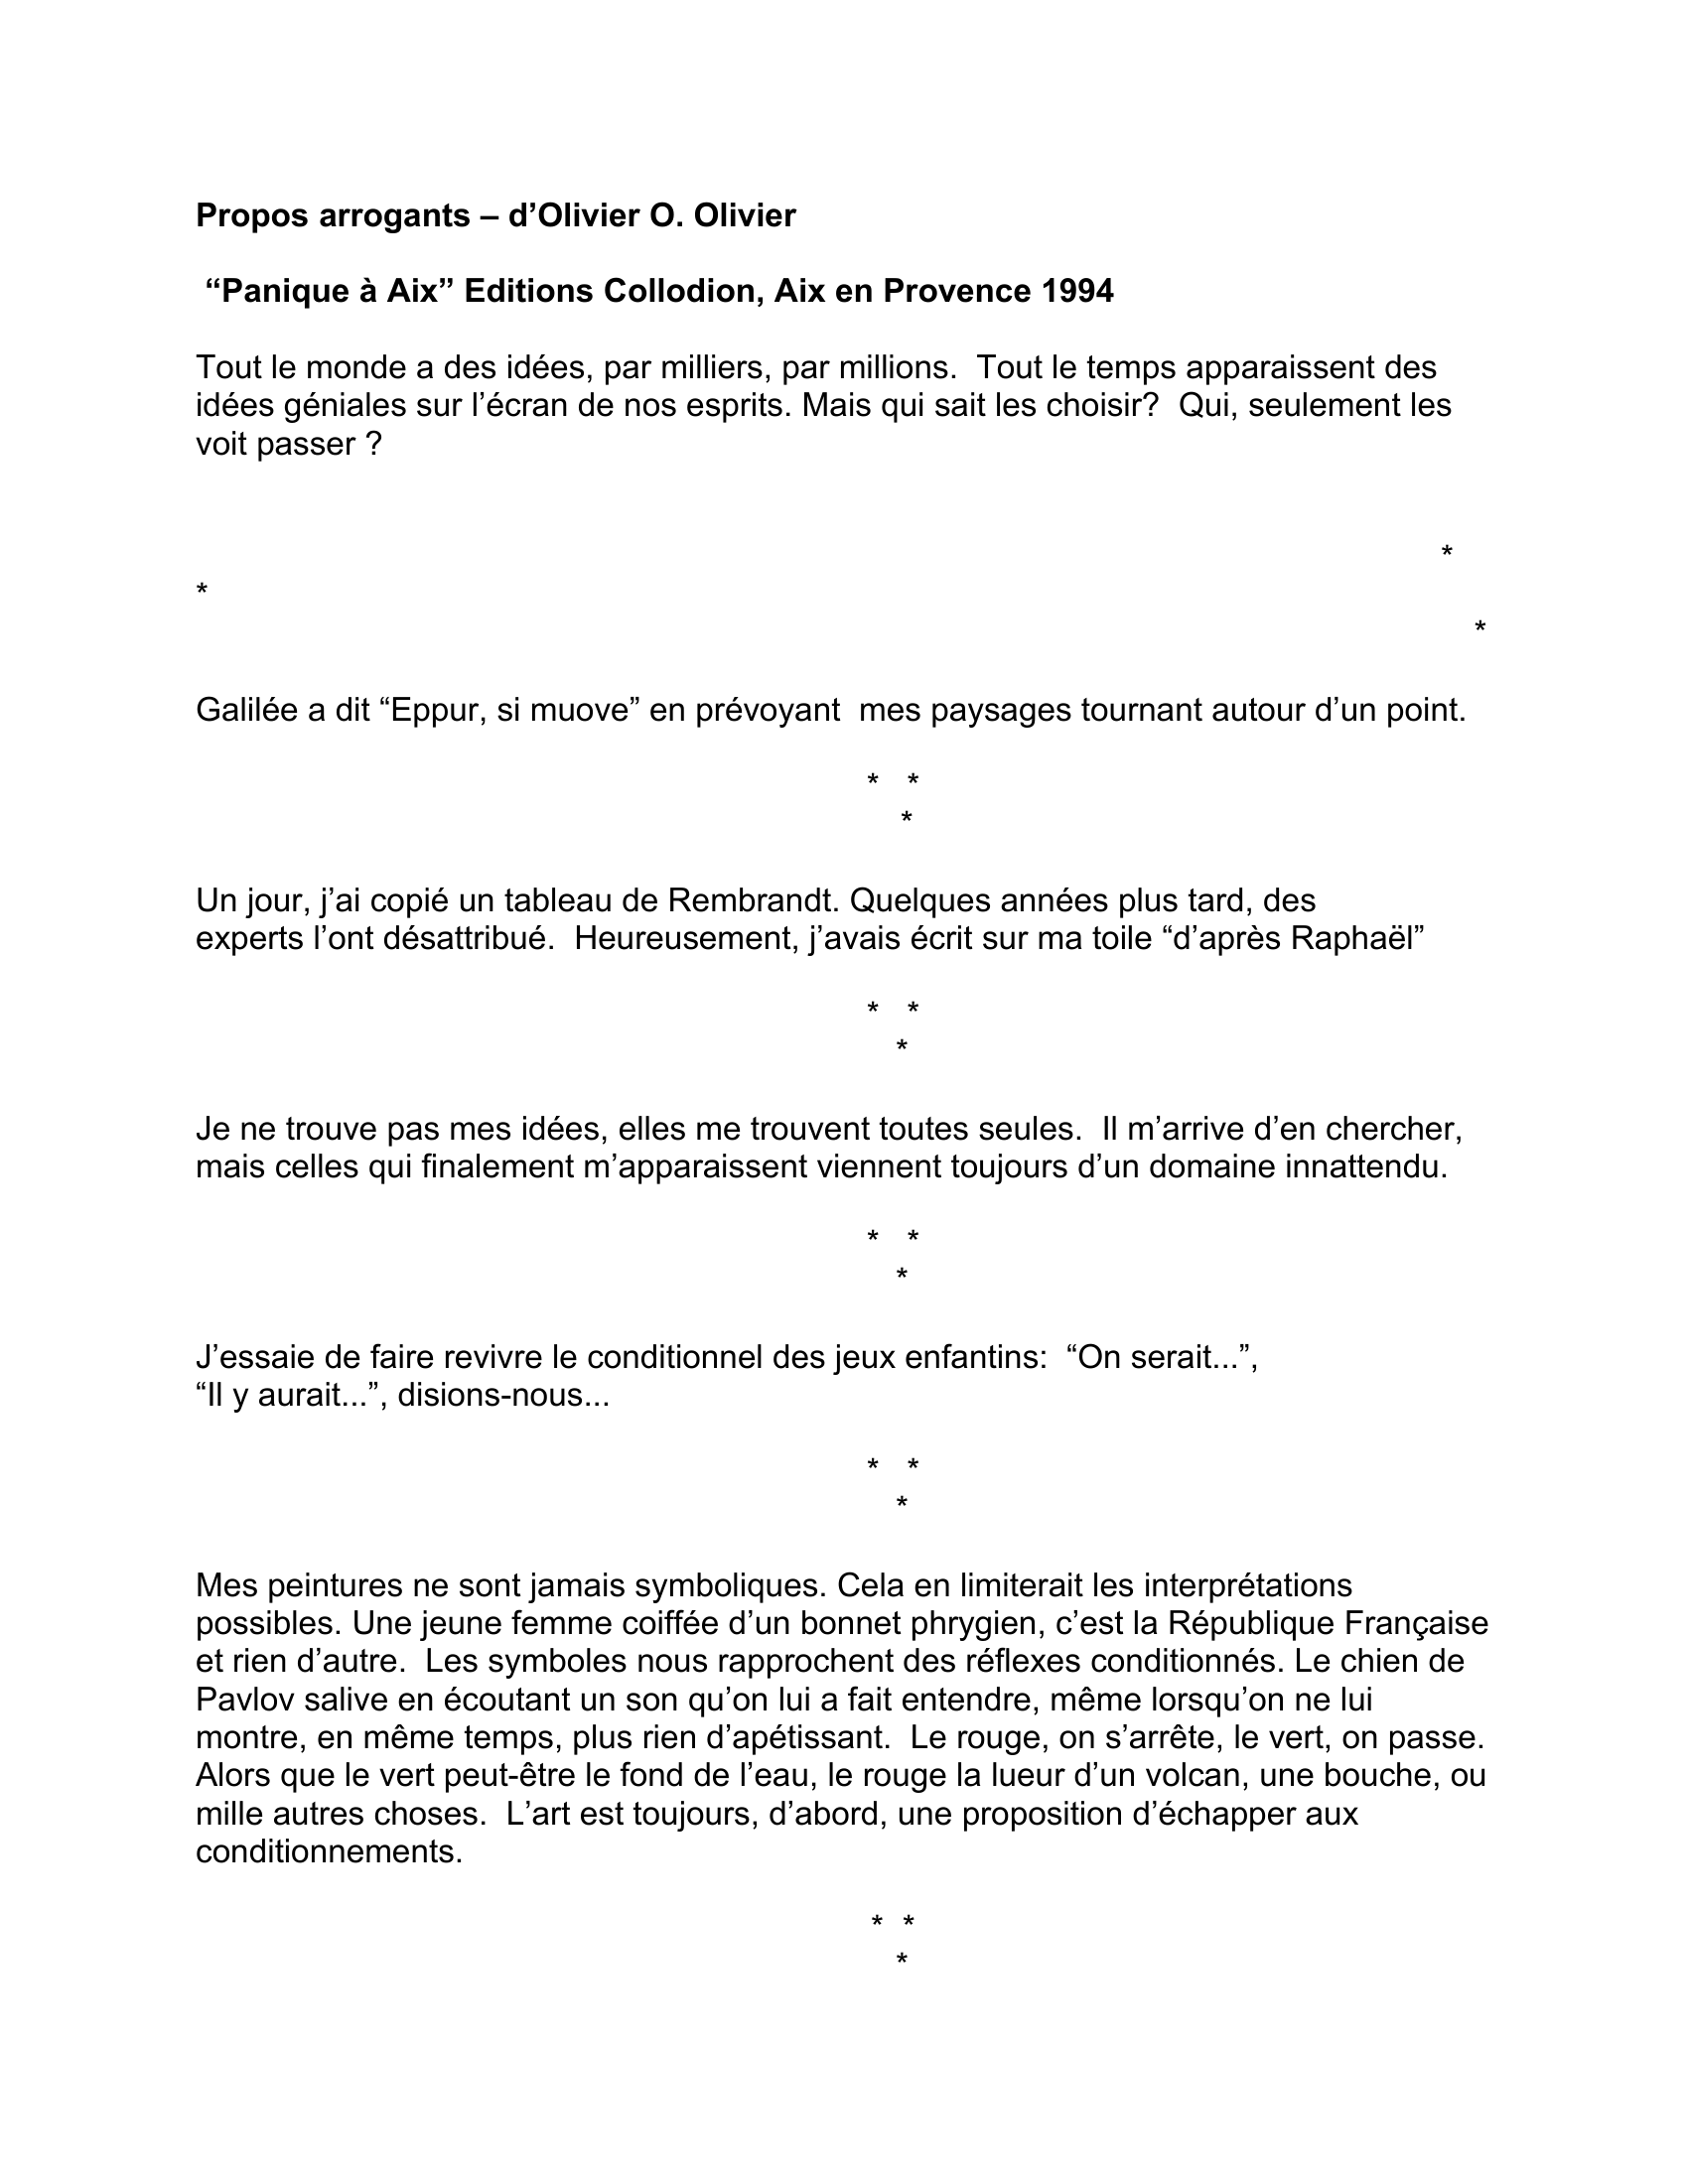 Prévisualisation du document Propos arrogants d'Olivier O. Olivier